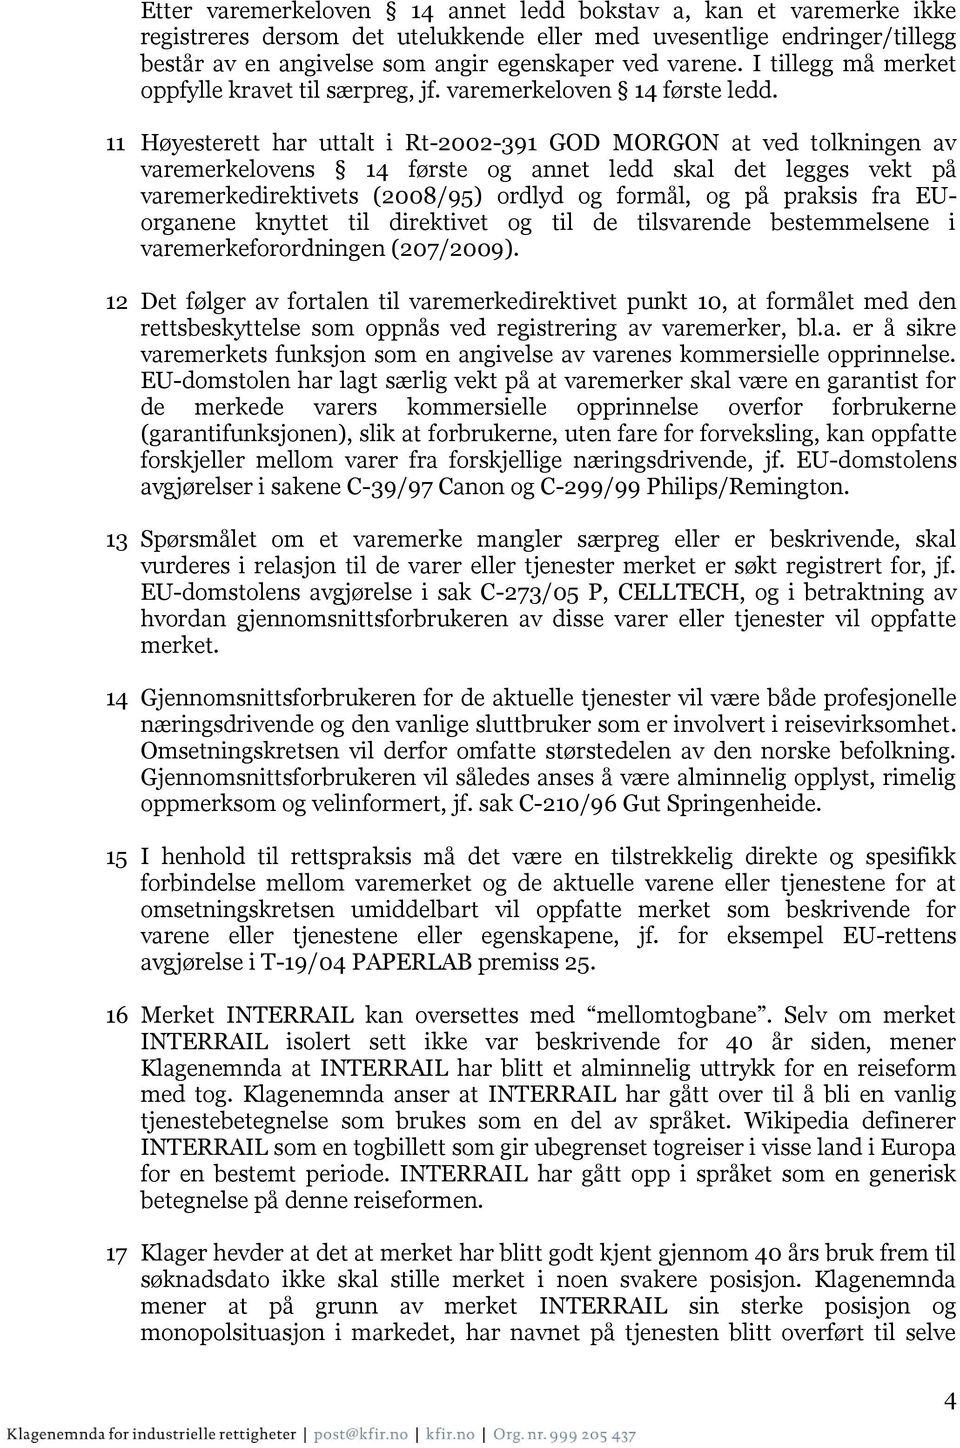 11 Høyesterett har uttalt i Rt-2002-391 GOD MORGON at ved tolkningen av varemerkelovens 14 første og annet ledd skal det legges vekt på varemerkedirektivets (2008/95) ordlyd og formål, og på praksis